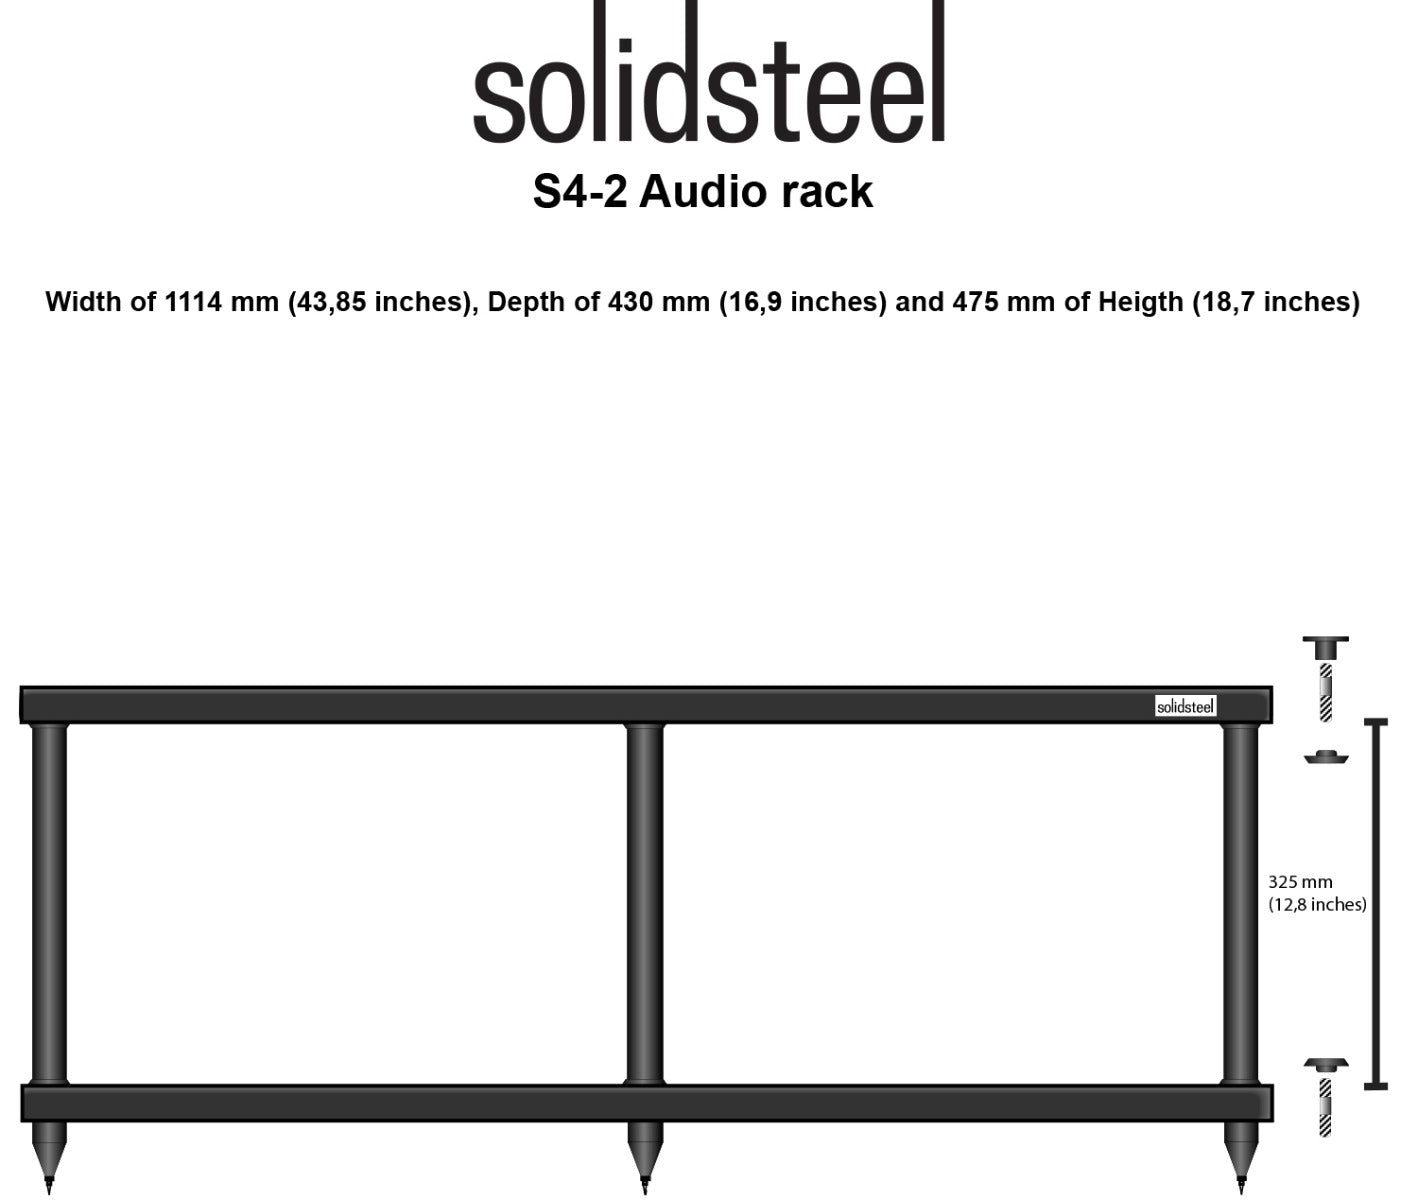 Solidsteel S4-2 Hi-Fi Audio & TV Rack drawing